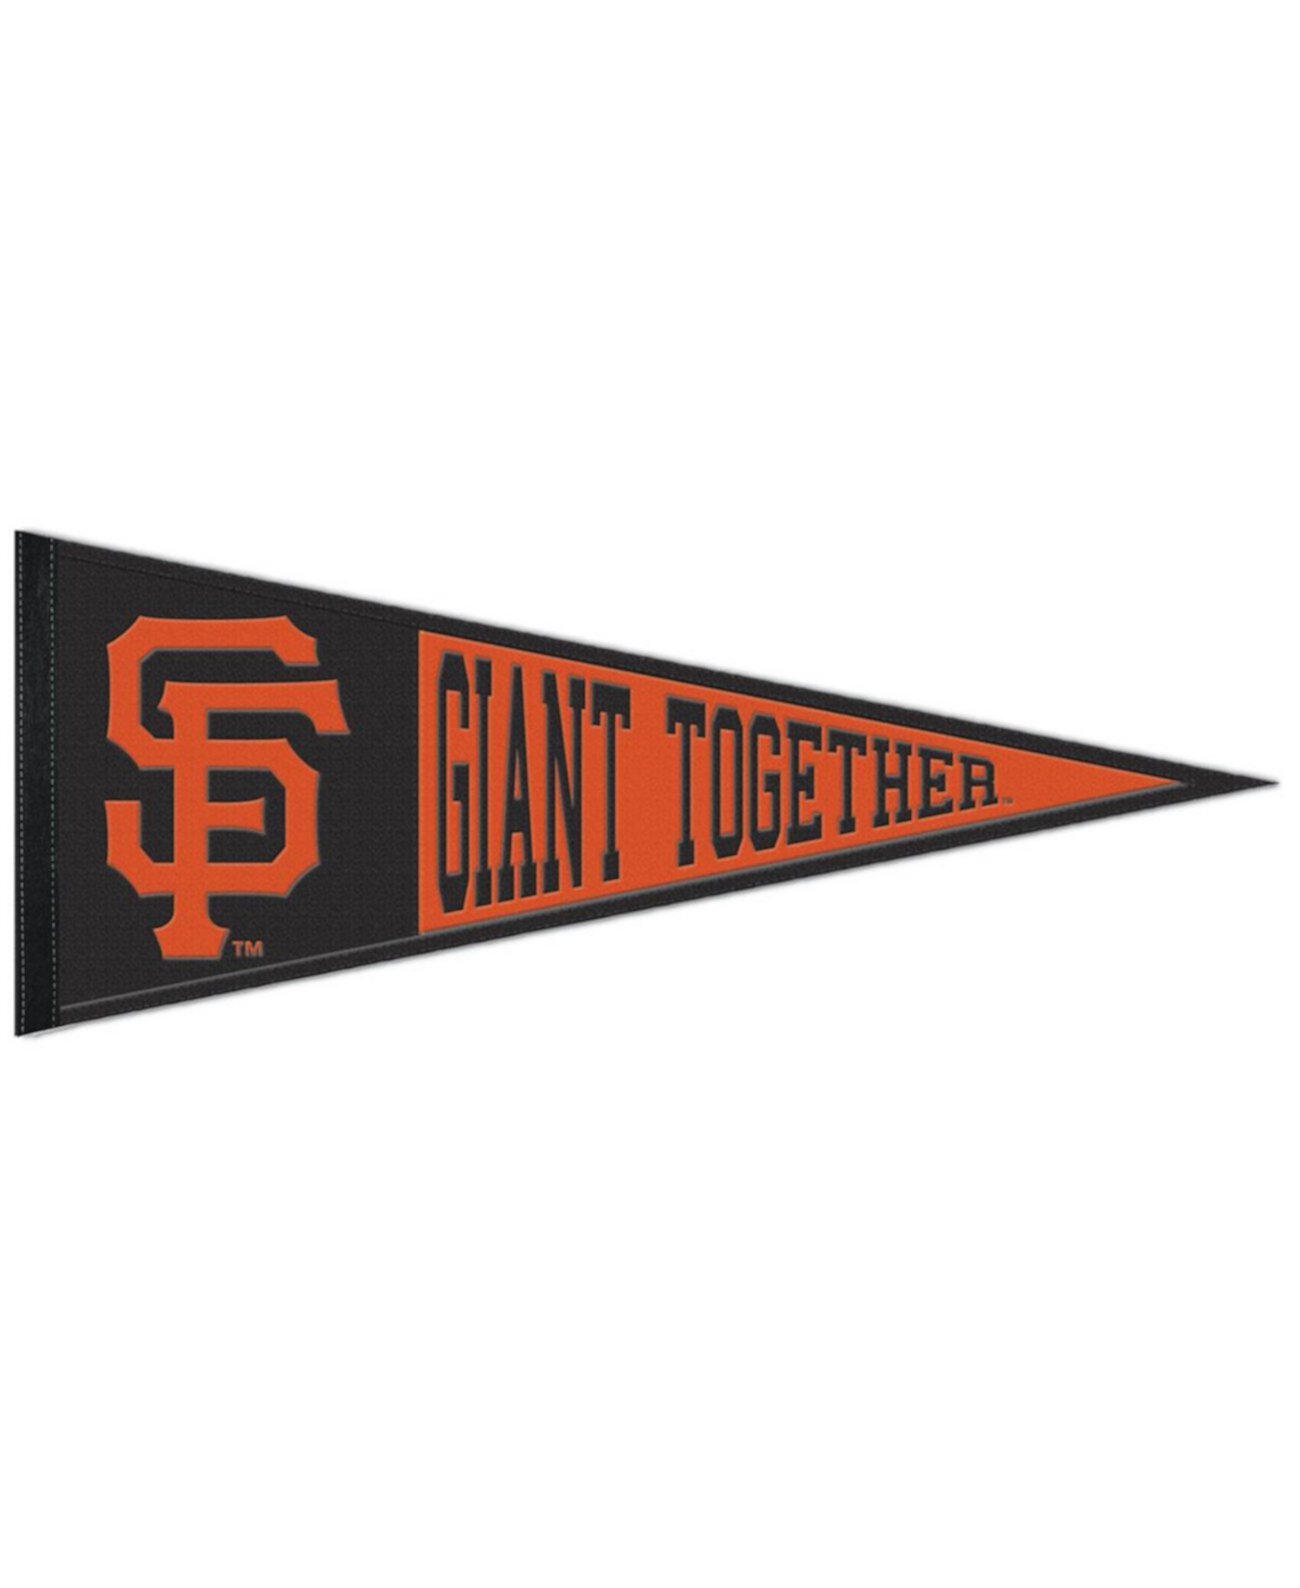 Вымпел с надписью San Francisco Giants размером 13 x 32 дюйма Wincraft